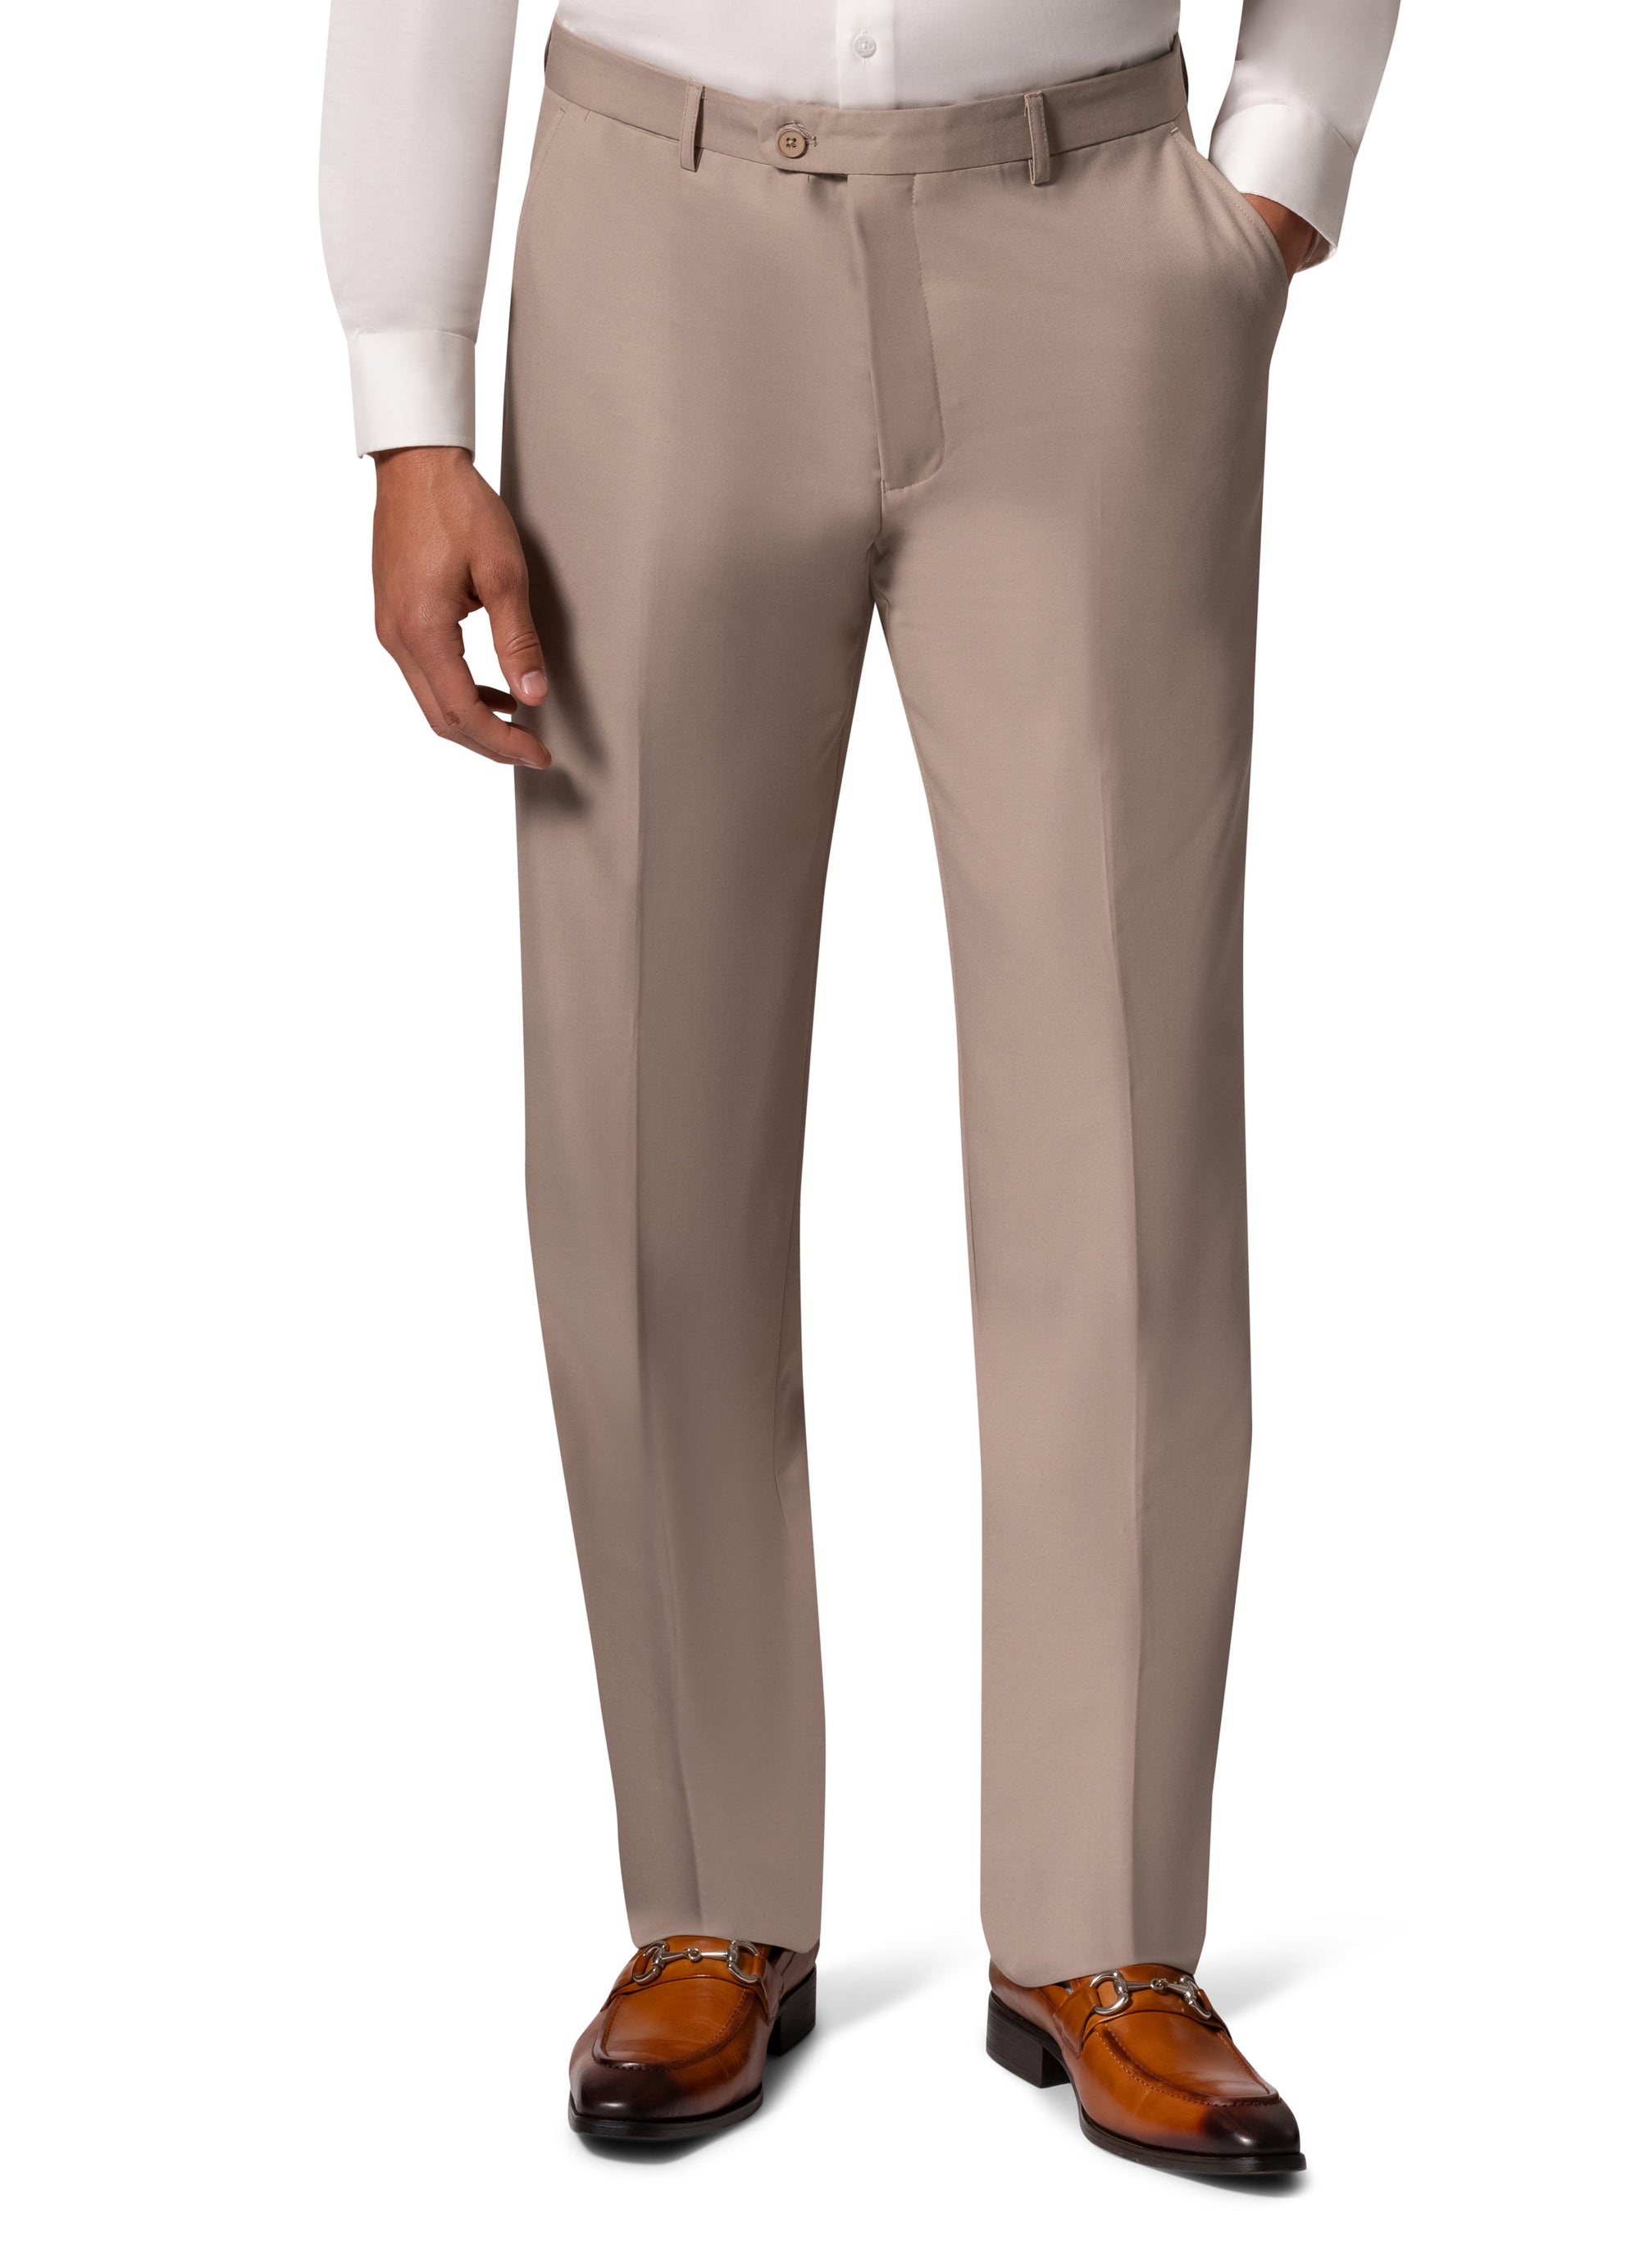 Berragamo A6732 D/B Slim Fit Suit - Tan